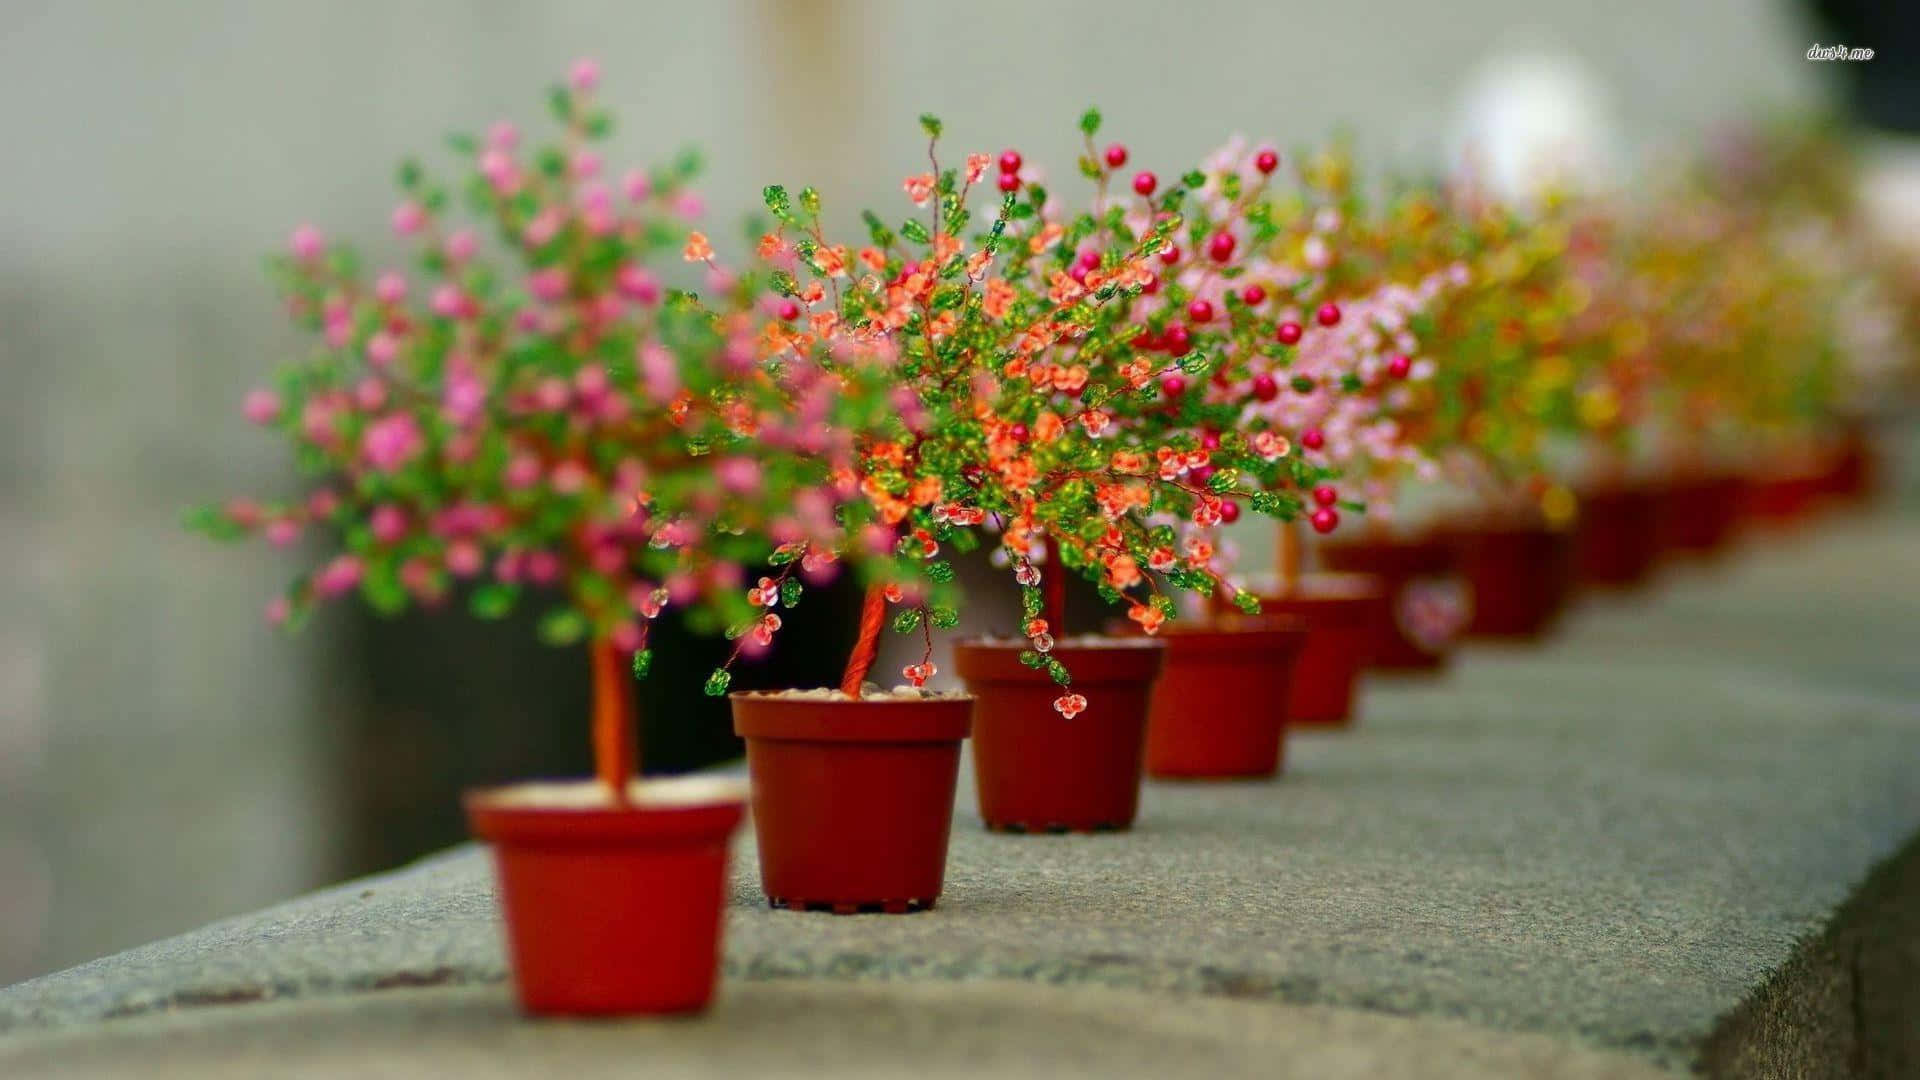 A beautiful pot of vibrant petunias